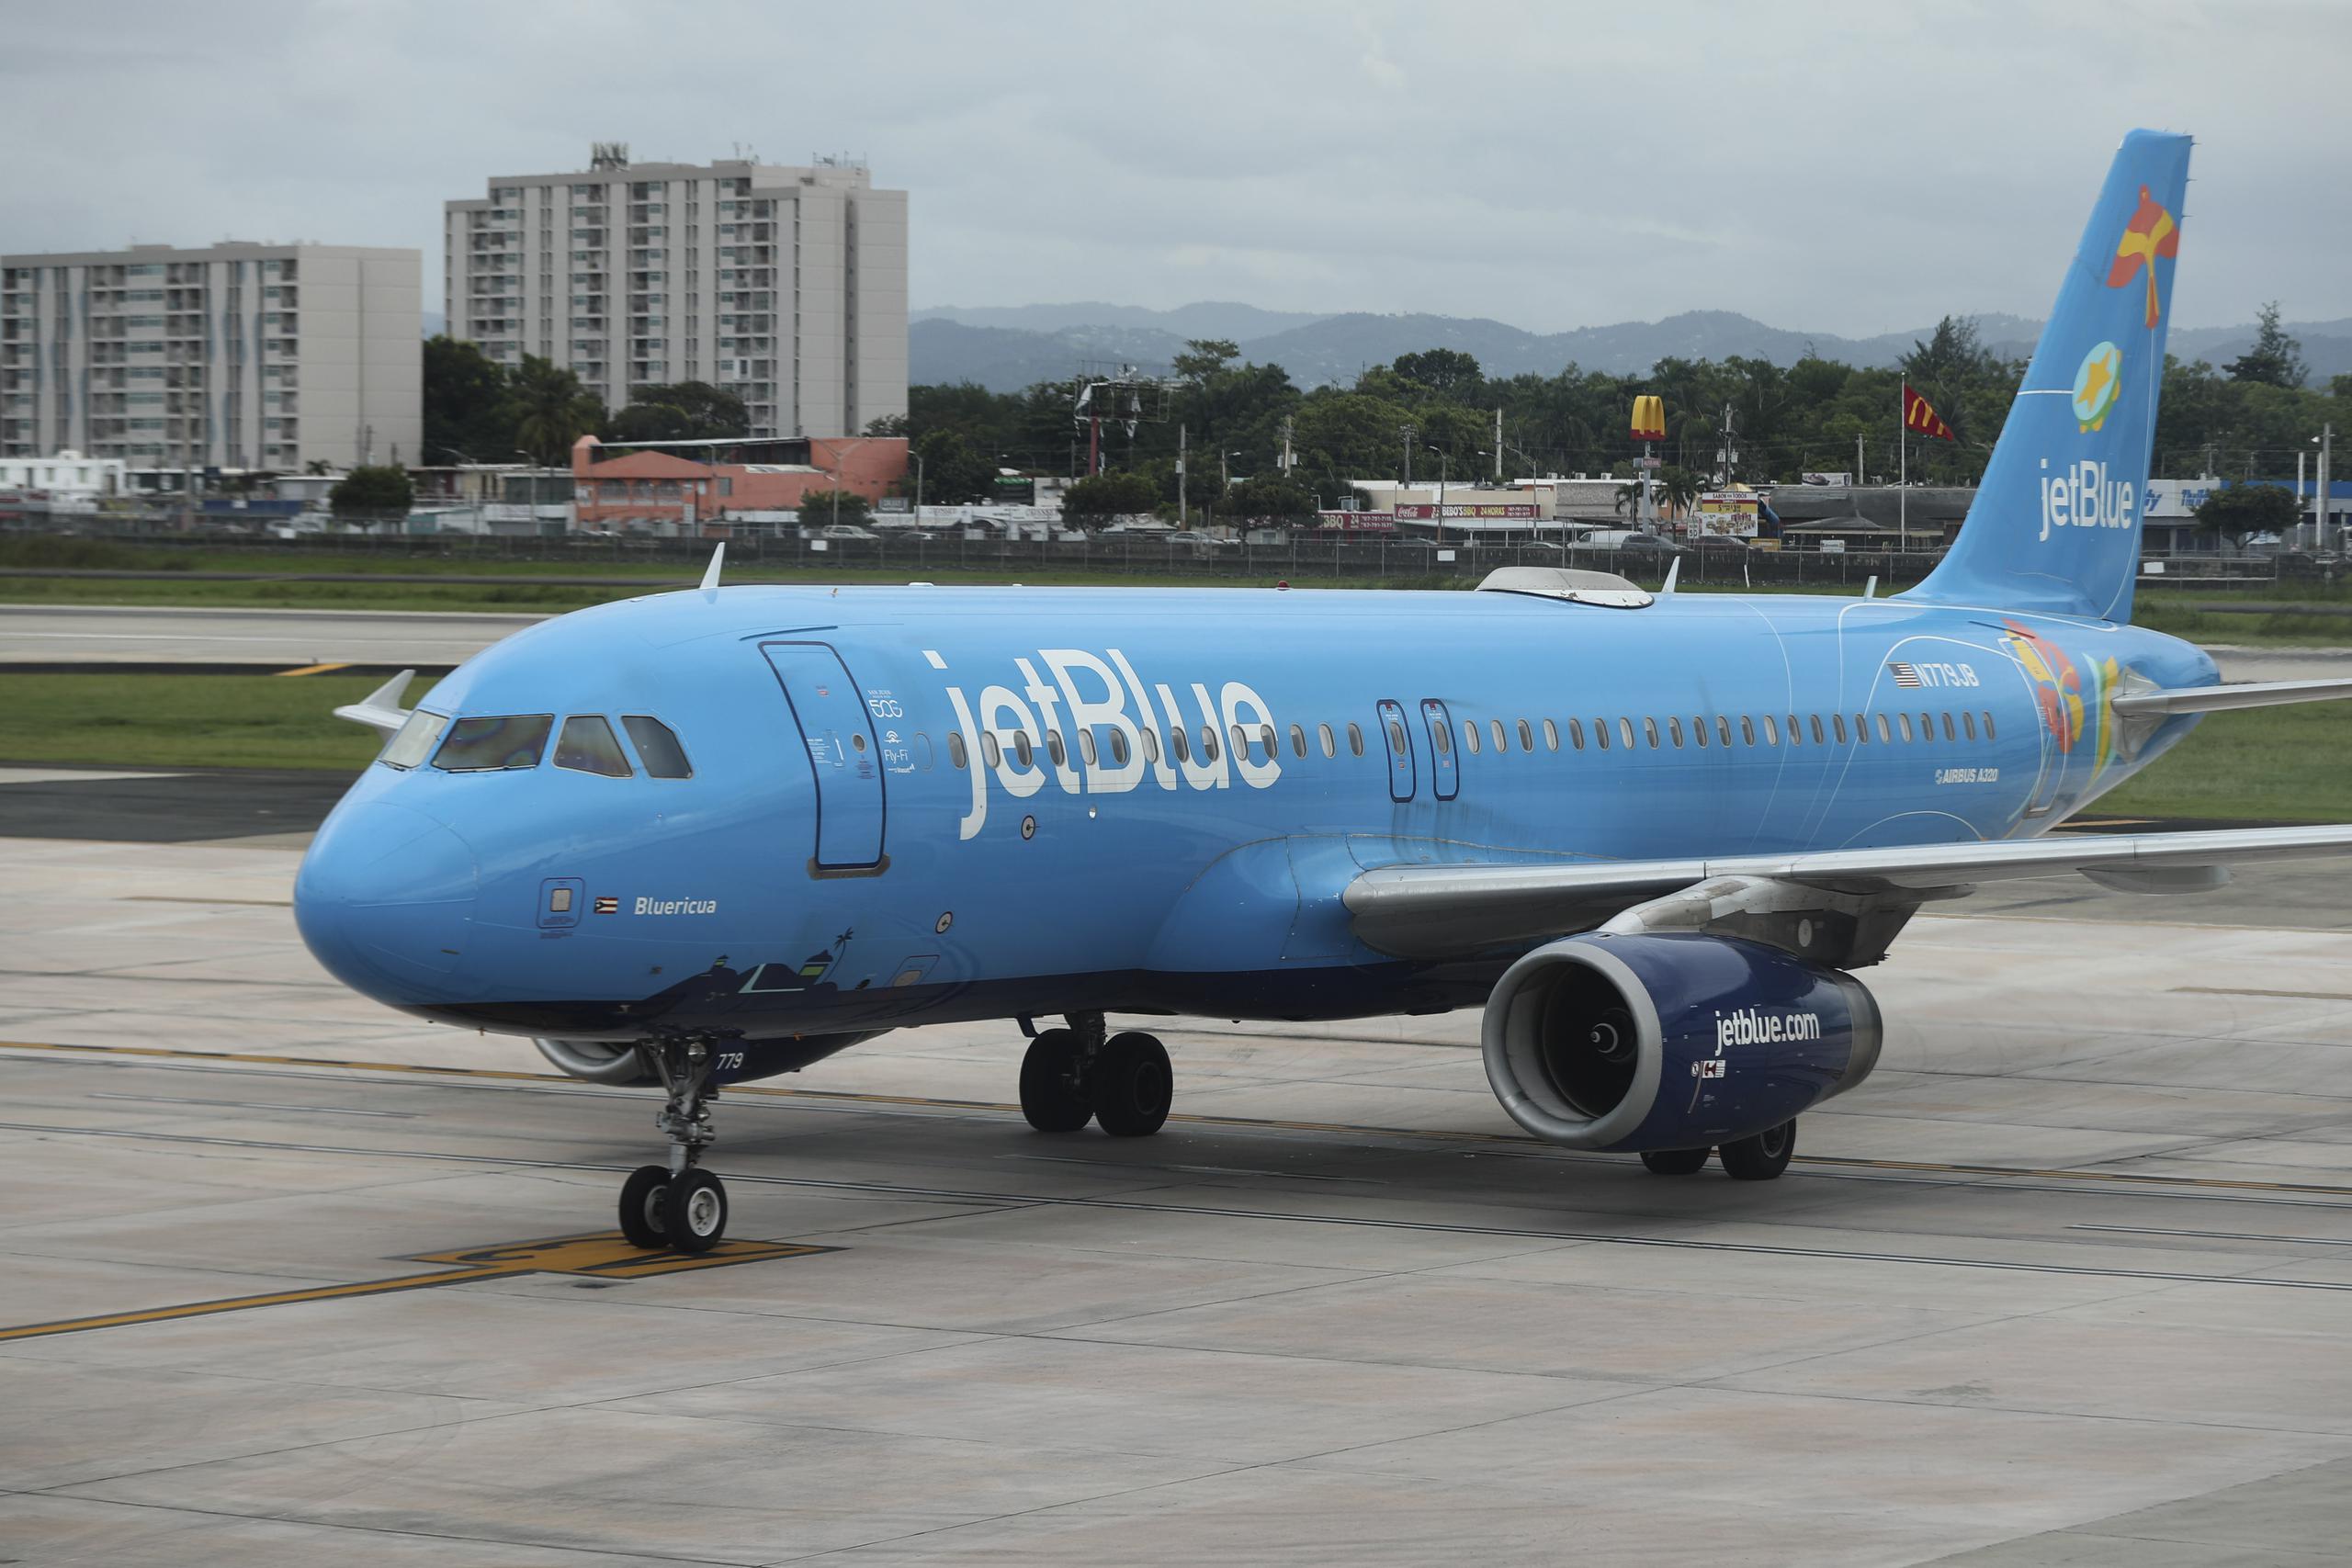 Vista del avión Bluericua de la aerolínea JetBlue en el aeropuerto Luis Muñoz Marín, en Carolina.